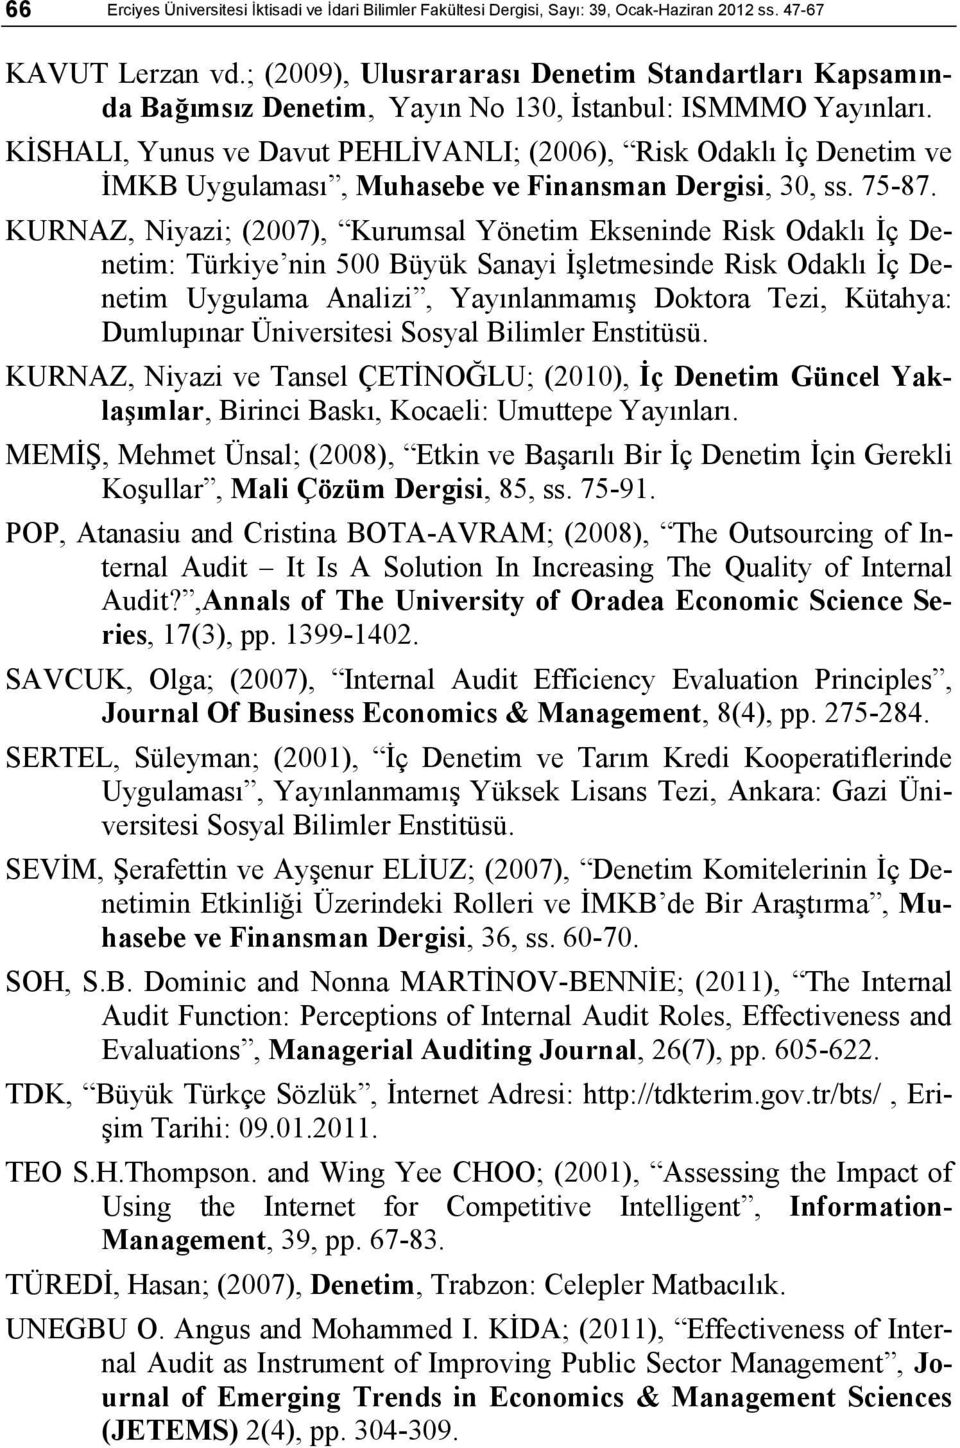 KİSHALI, Yunus ve Davut PEHLİVANLI; (2006), Risk Odaklı İç Denetim ve İMKB Uygulaması, Muhasebe ve Finansman Dergisi, 30, ss. 75-87.